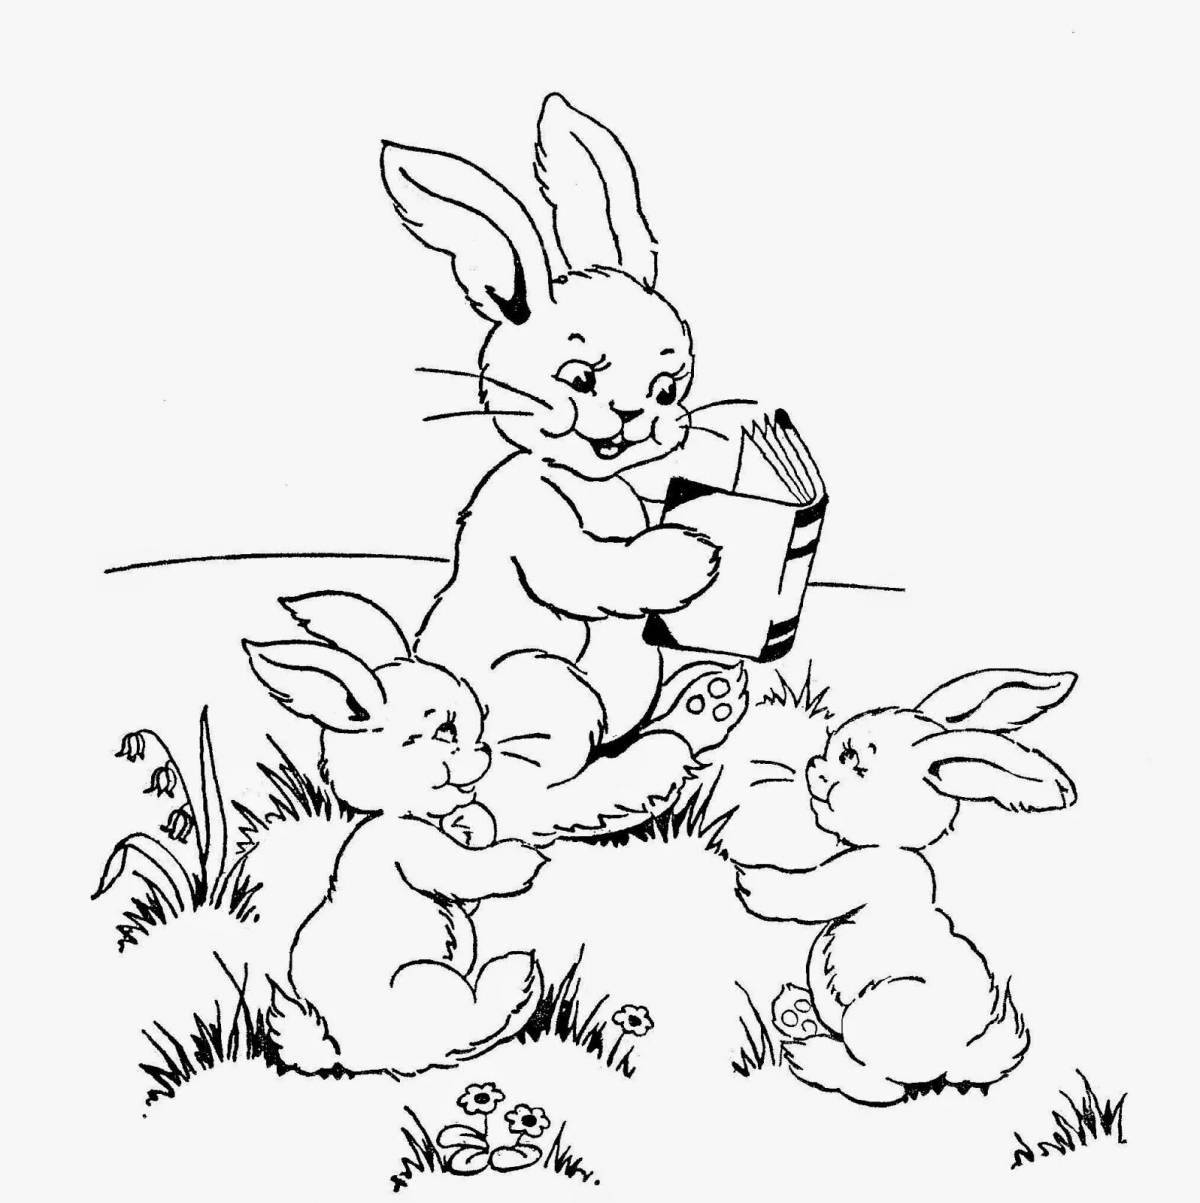 Happy hare family